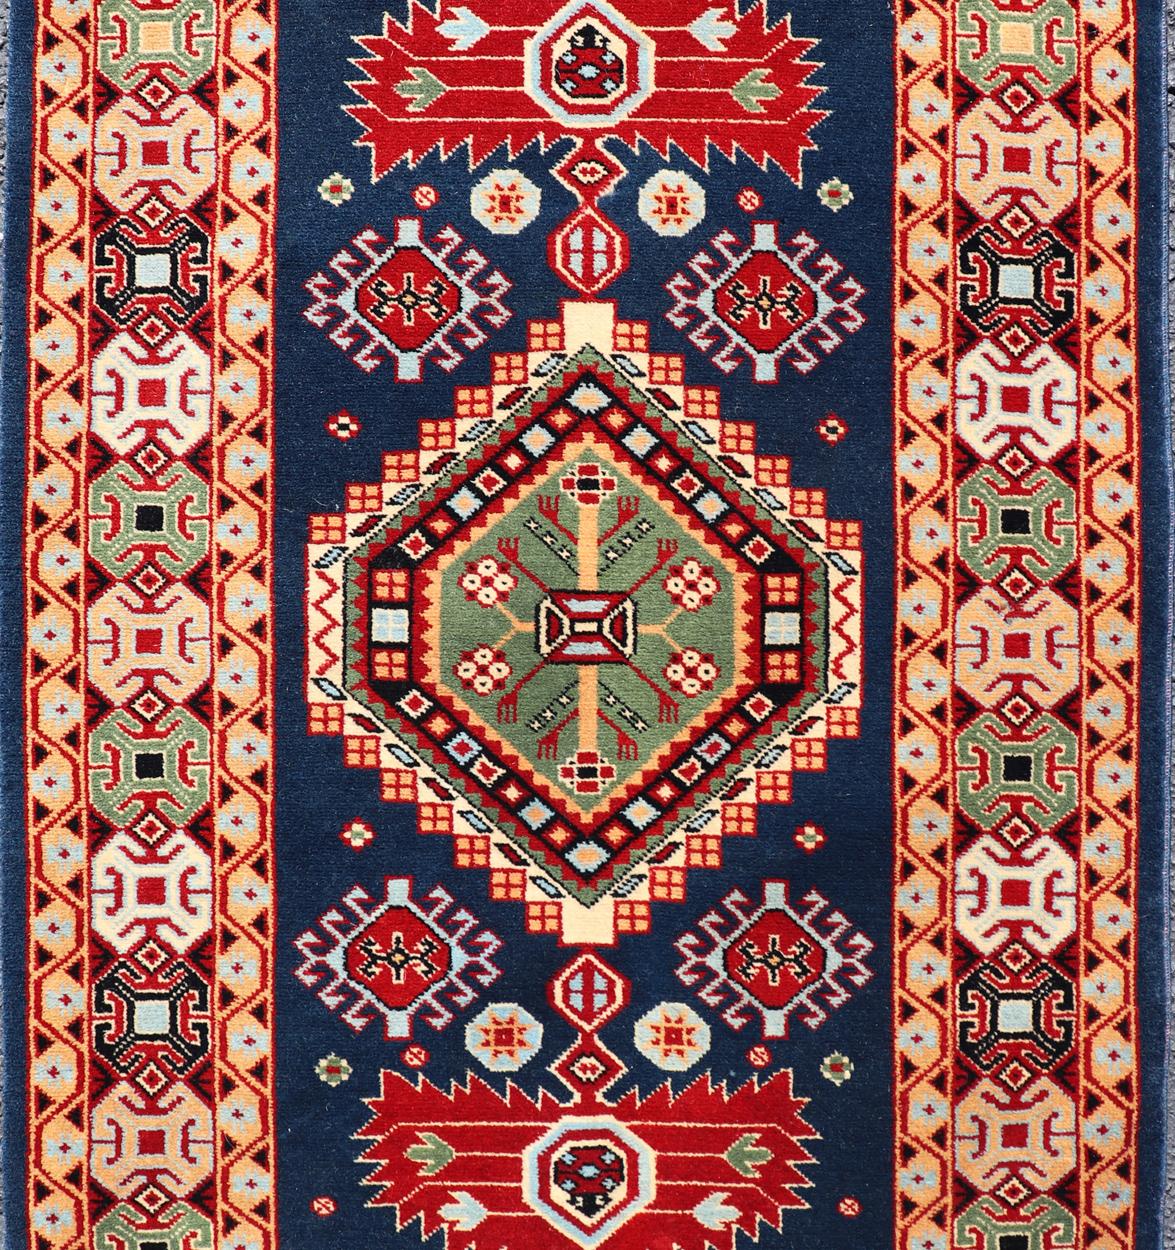 Geometrischer Medaillon-Teppich aus dem Kaukasus in mehreren Farben, Teppich 10-KE-311, Herkunftsland / Typ: Kaukasus / Stammesmuster, Ende 20. Jahrhundert

Die leuchtenden Rot-, Blau- und Elfenbeintöne, die diesen schönen Teppich aus dem späten